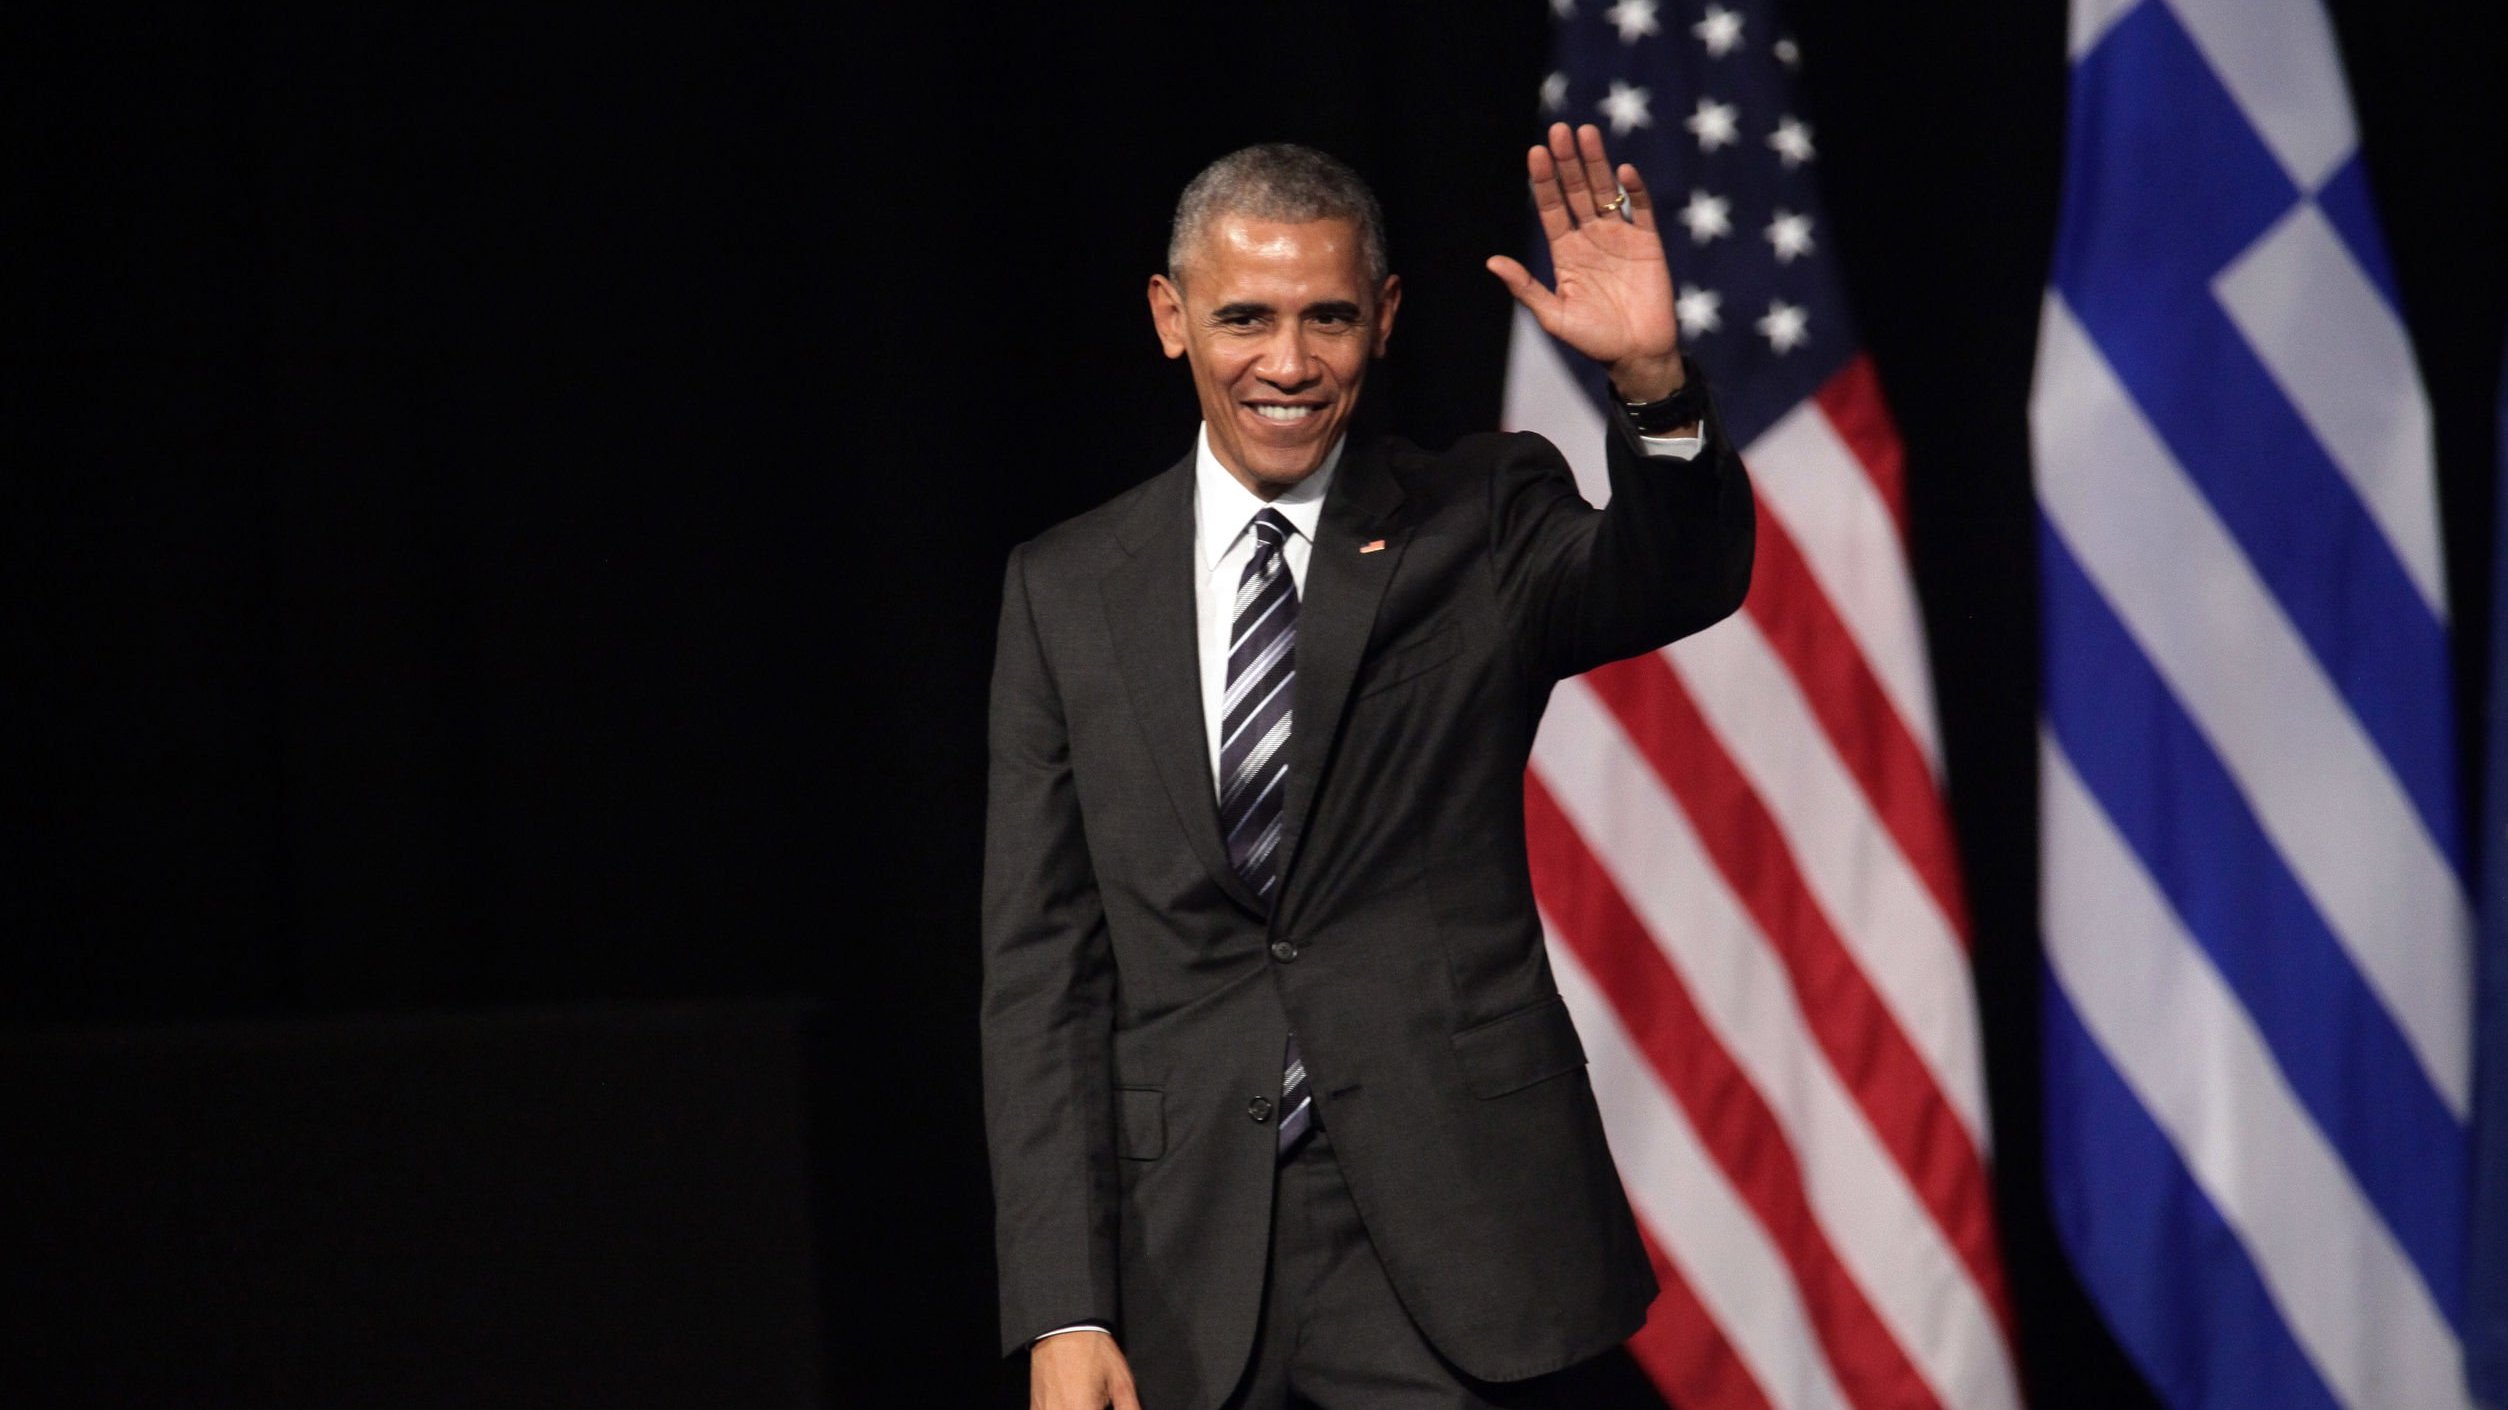 Barack Obama acenando ao lado da bandeira dos Estados Unidos